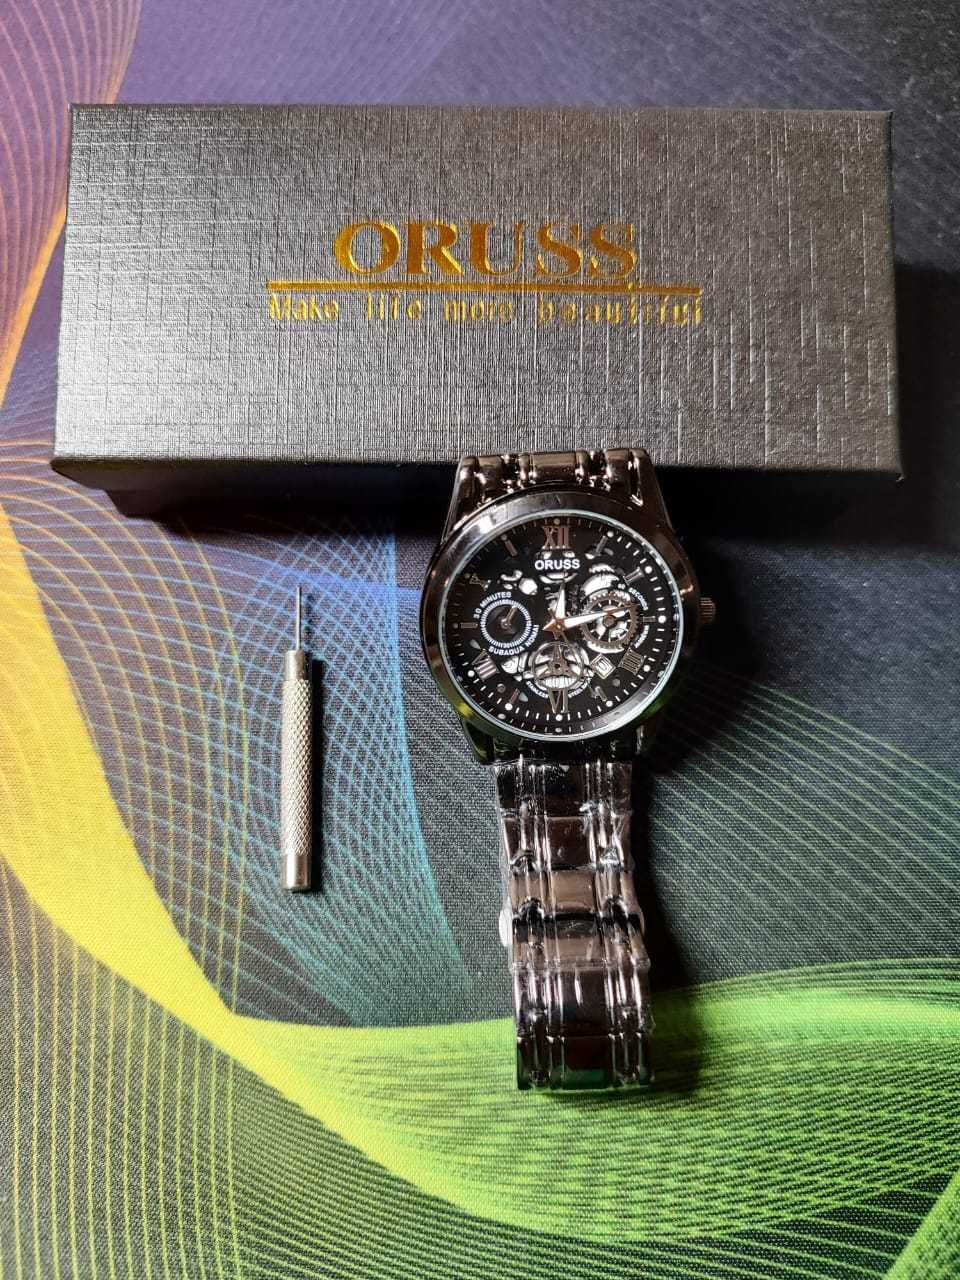 Продам часы (кварц).Модель ORUSS 1853